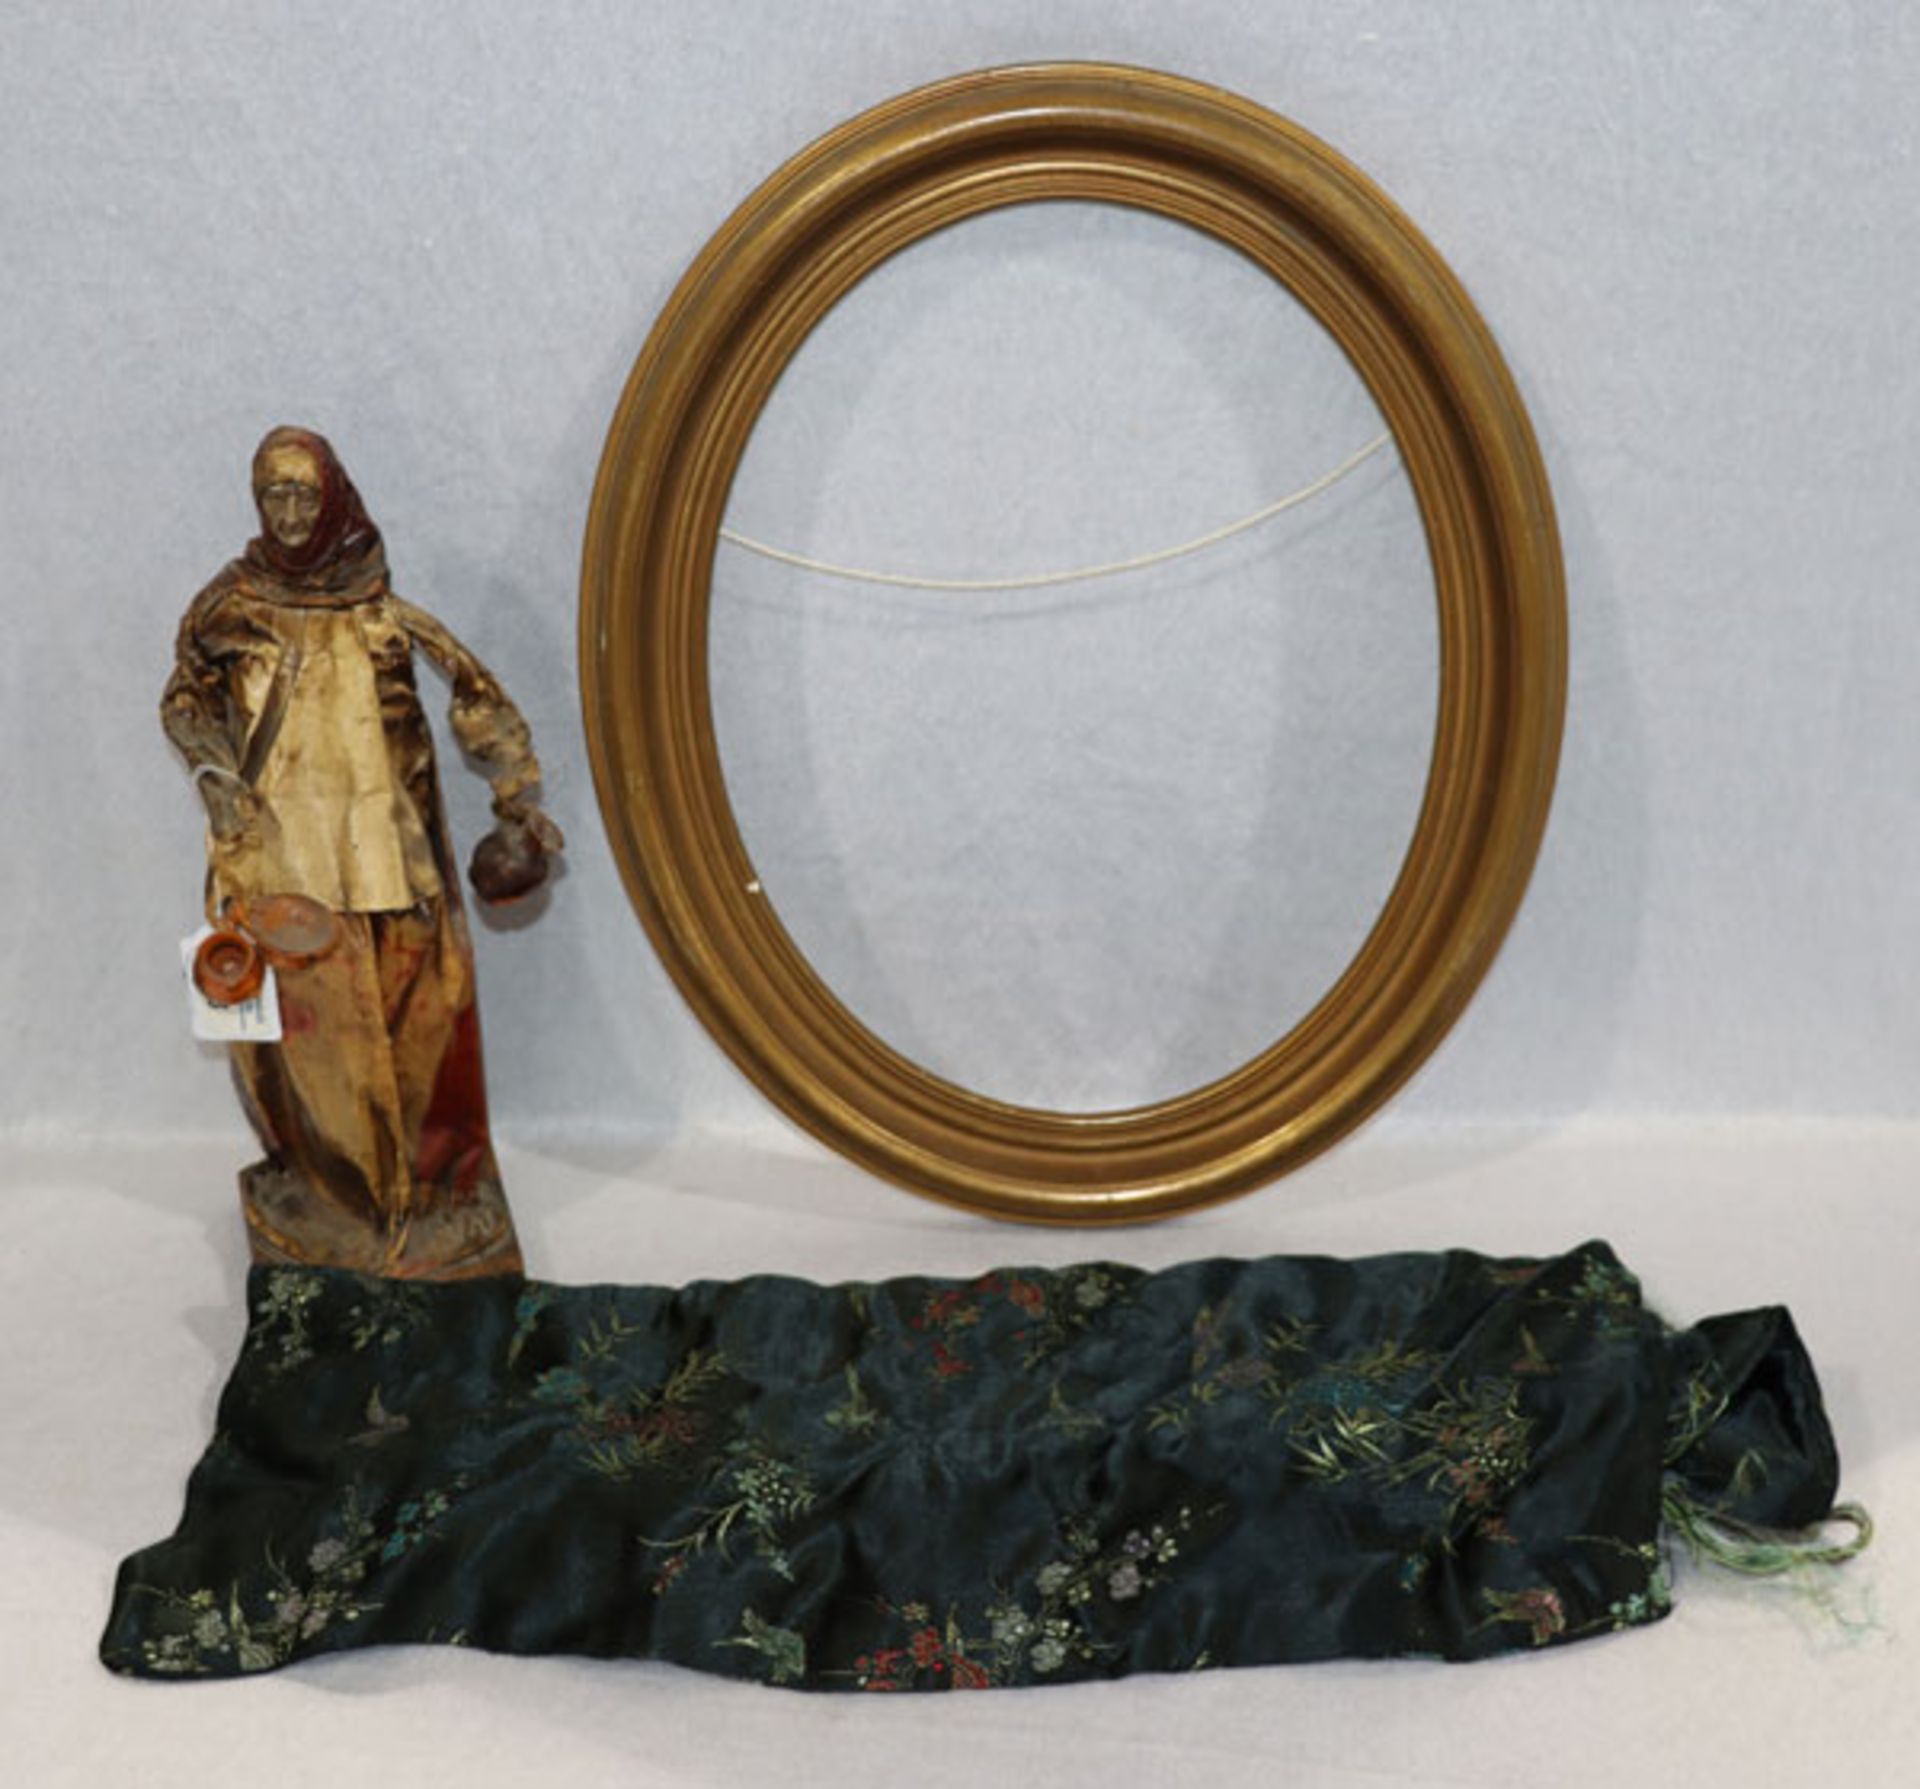 Konvolut: Ovaler Bilderrahmen, Pappmachéfigur 'Frau mit Tonwaren', H 33 cm, und Seiden